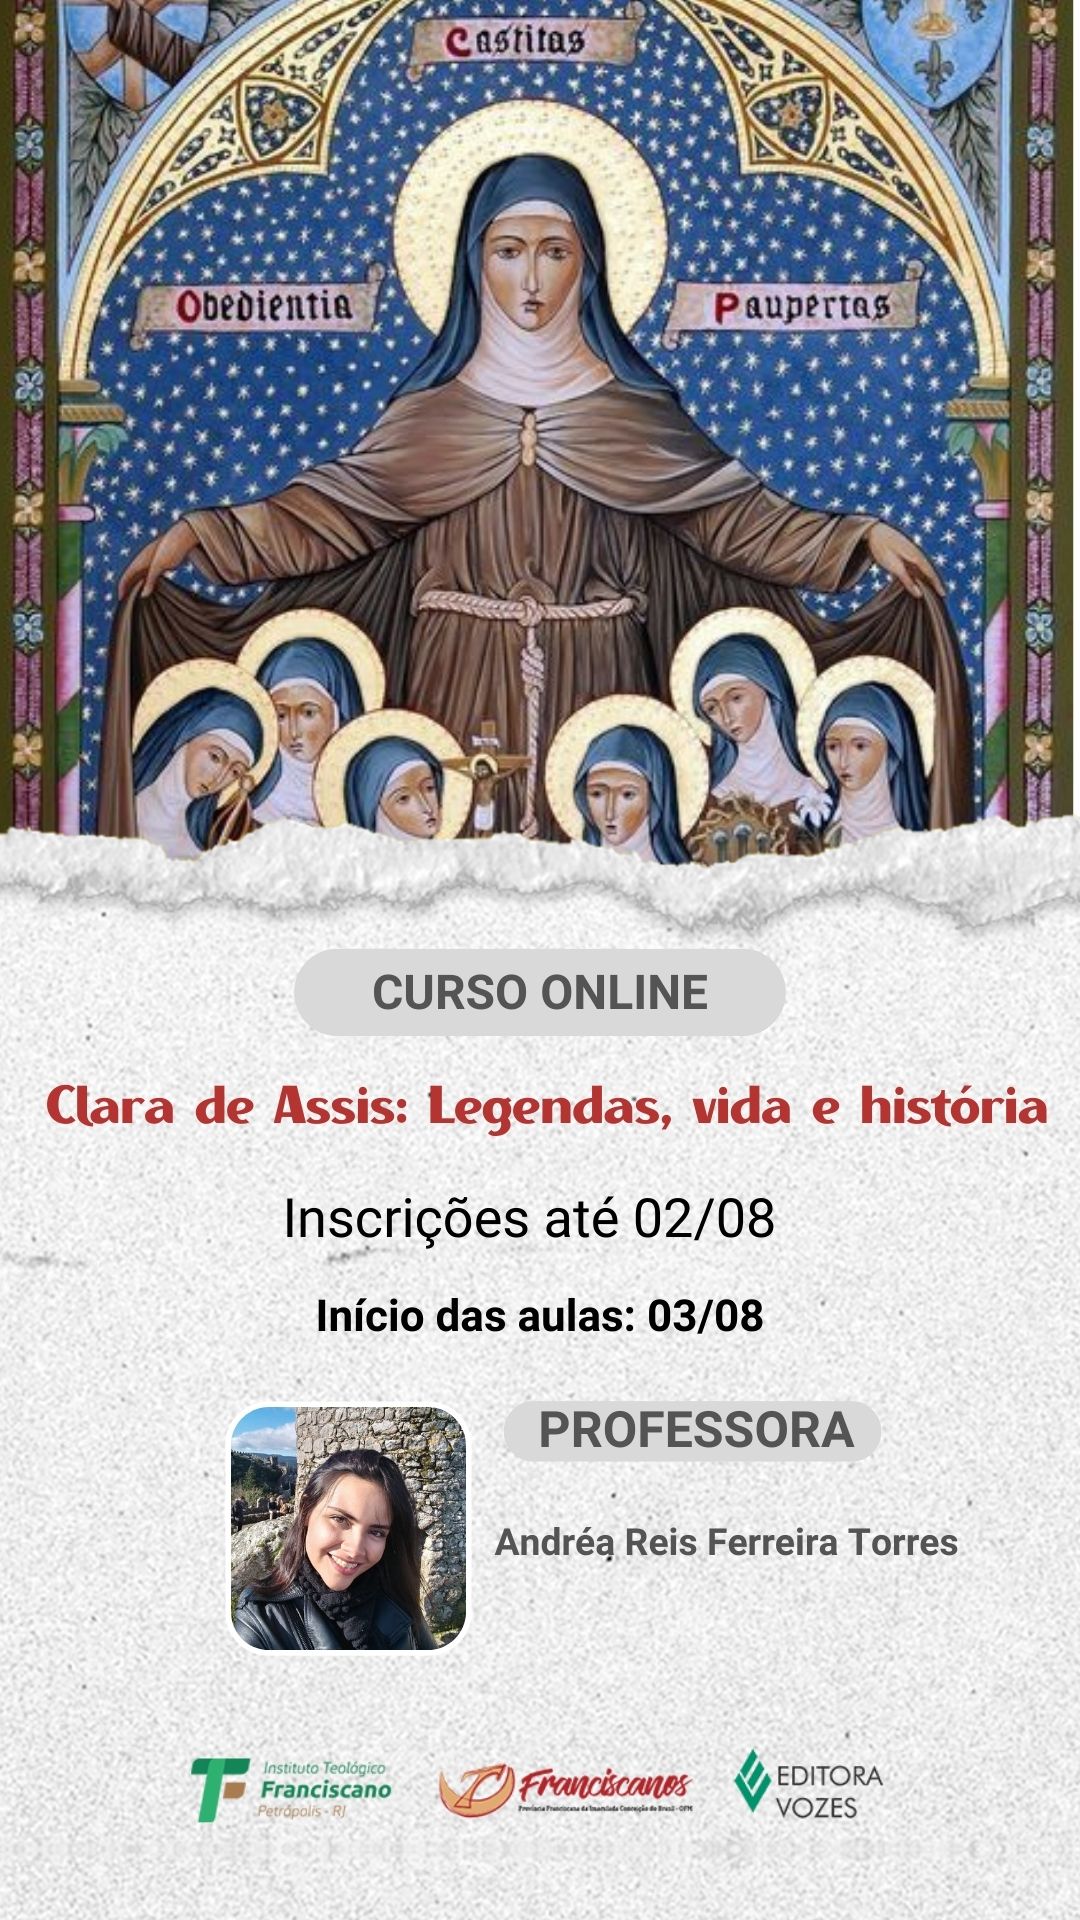 Clara de Assis: Legendas, vida e história